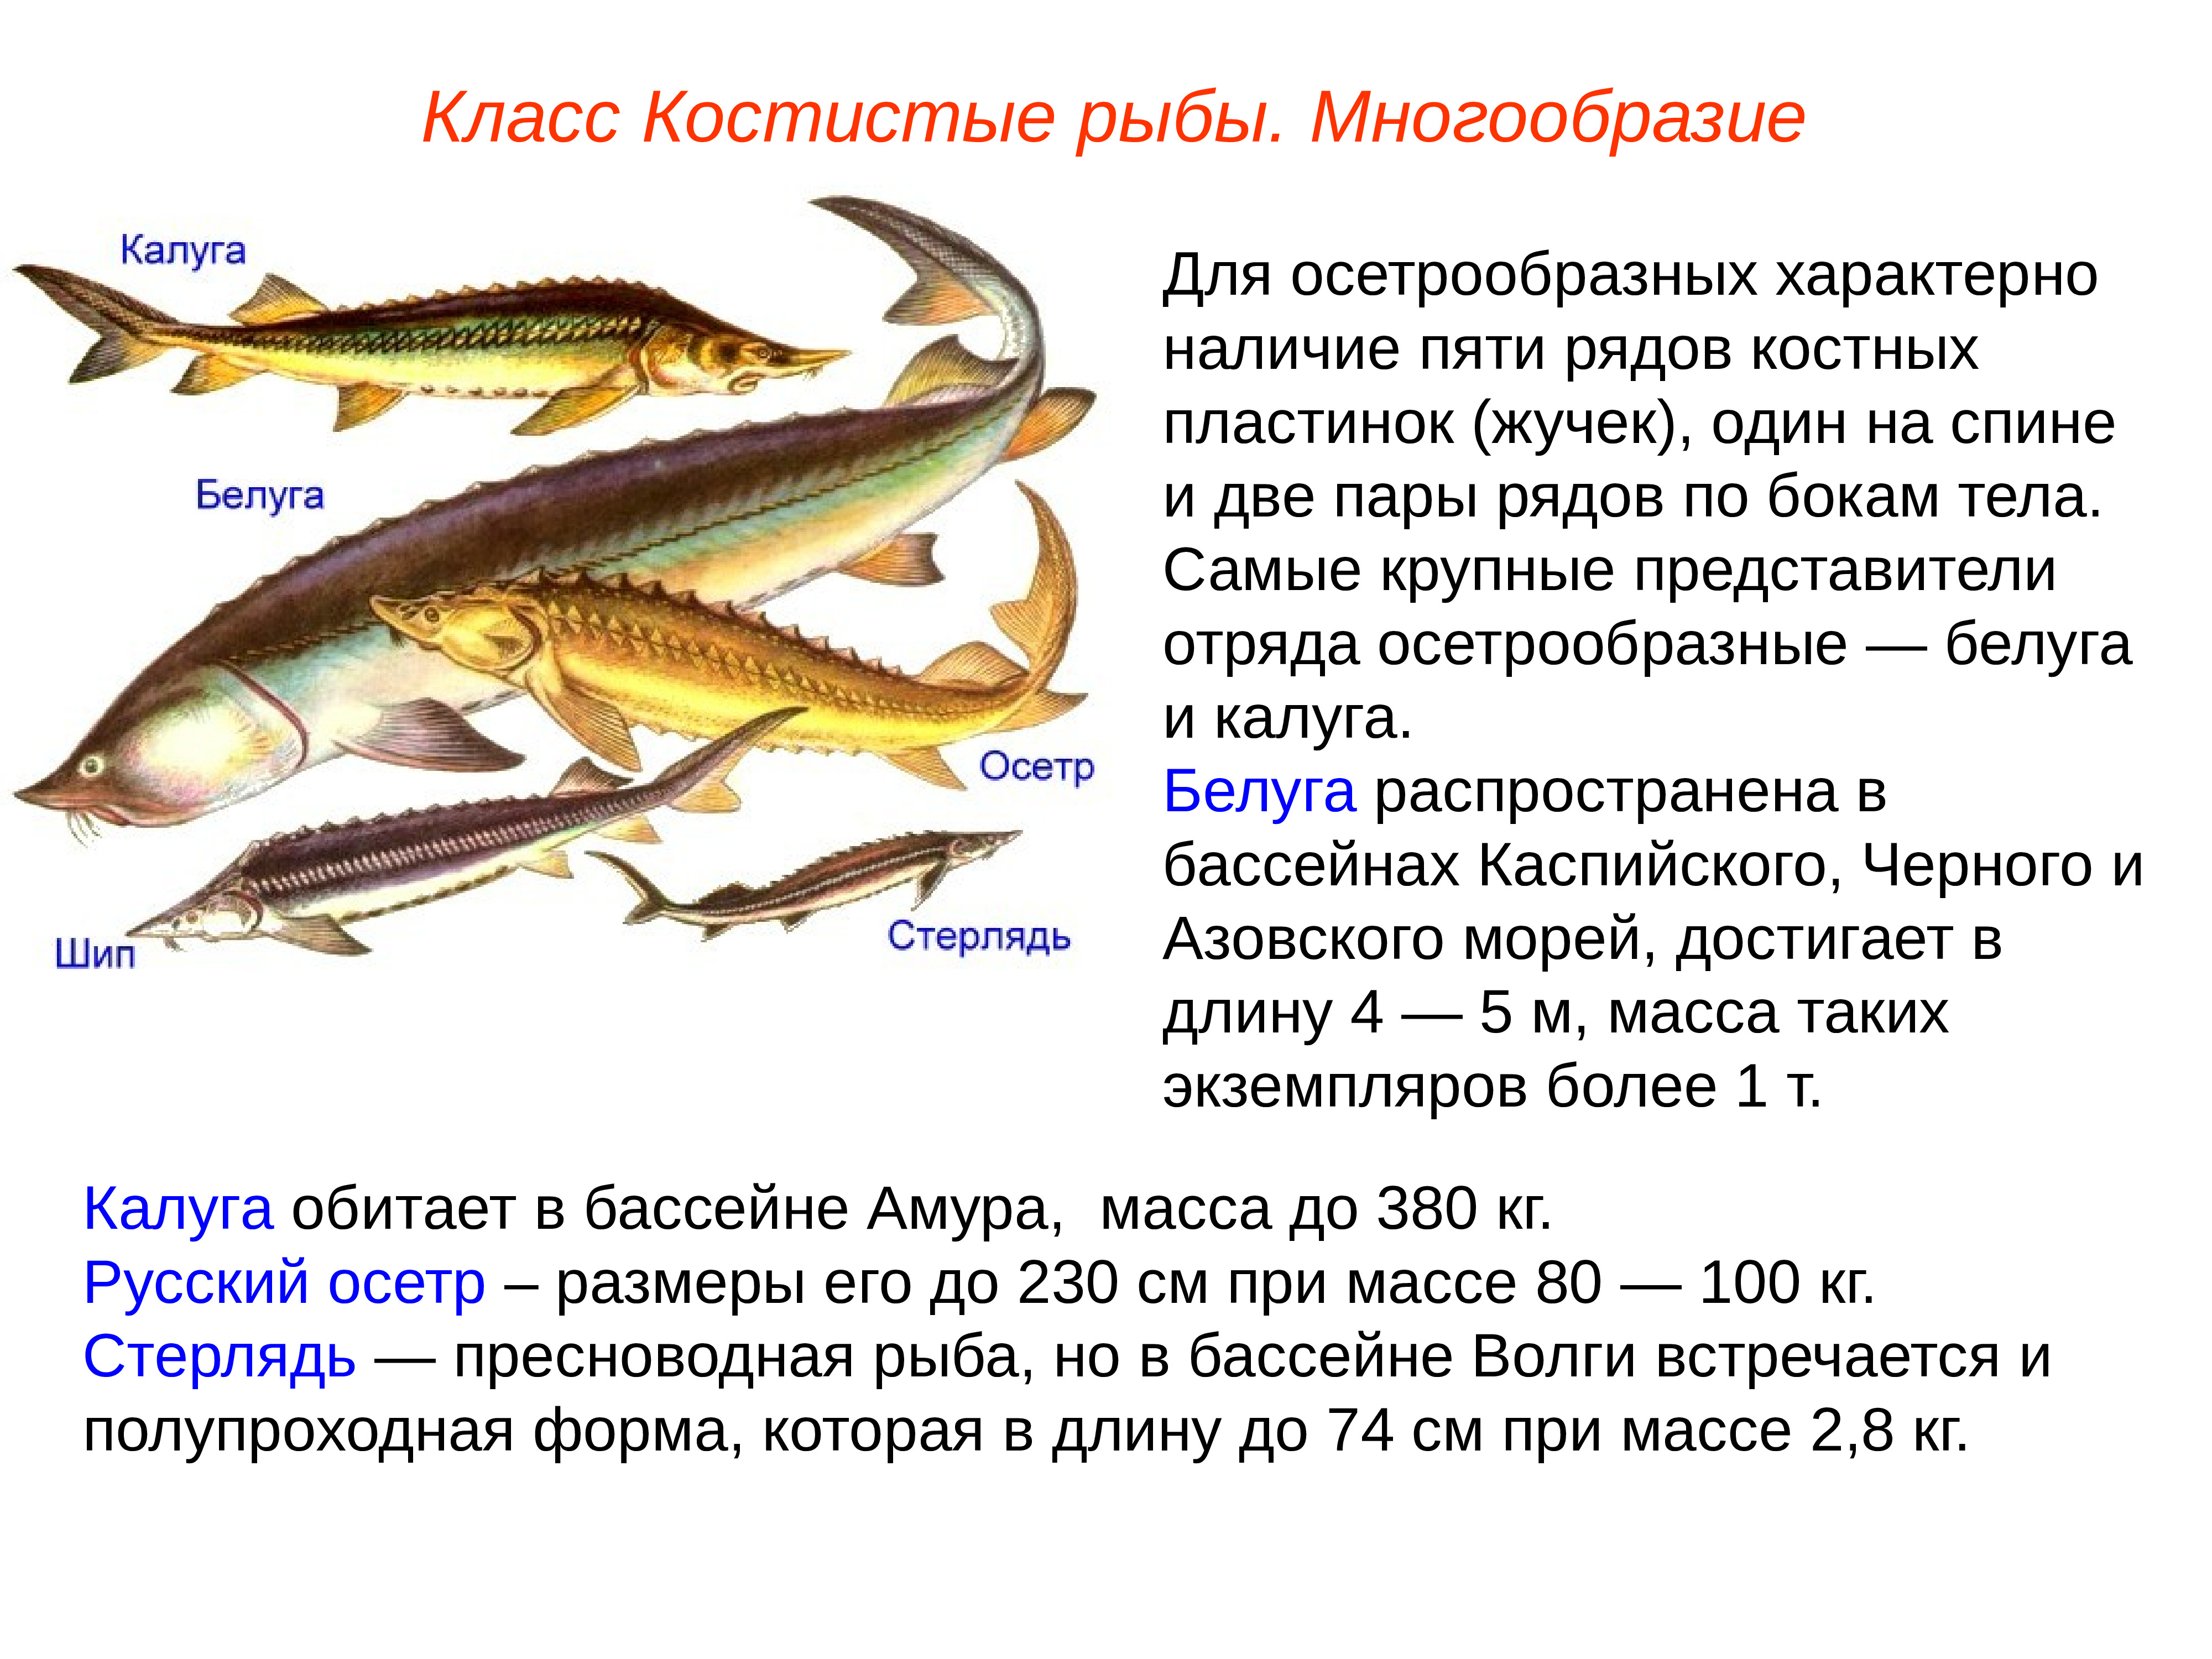 Какие рыбы относятся к классу костные